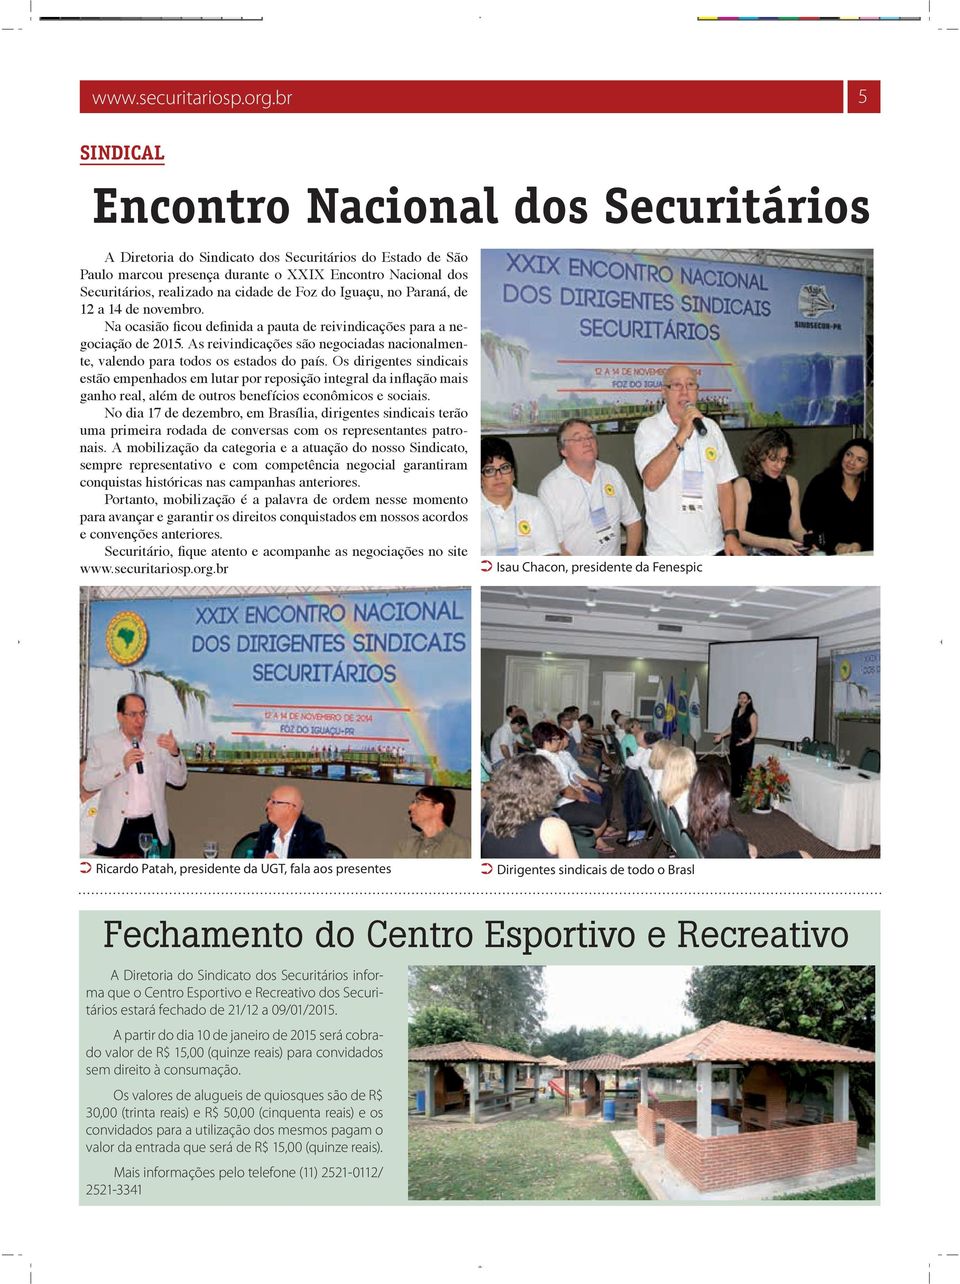 cidade de Foz do Iguaçu, no Paraná, de 12 a 14 de novembro. Na ocasião ficou definida a pauta de reivindicações para a negociação de 2015.